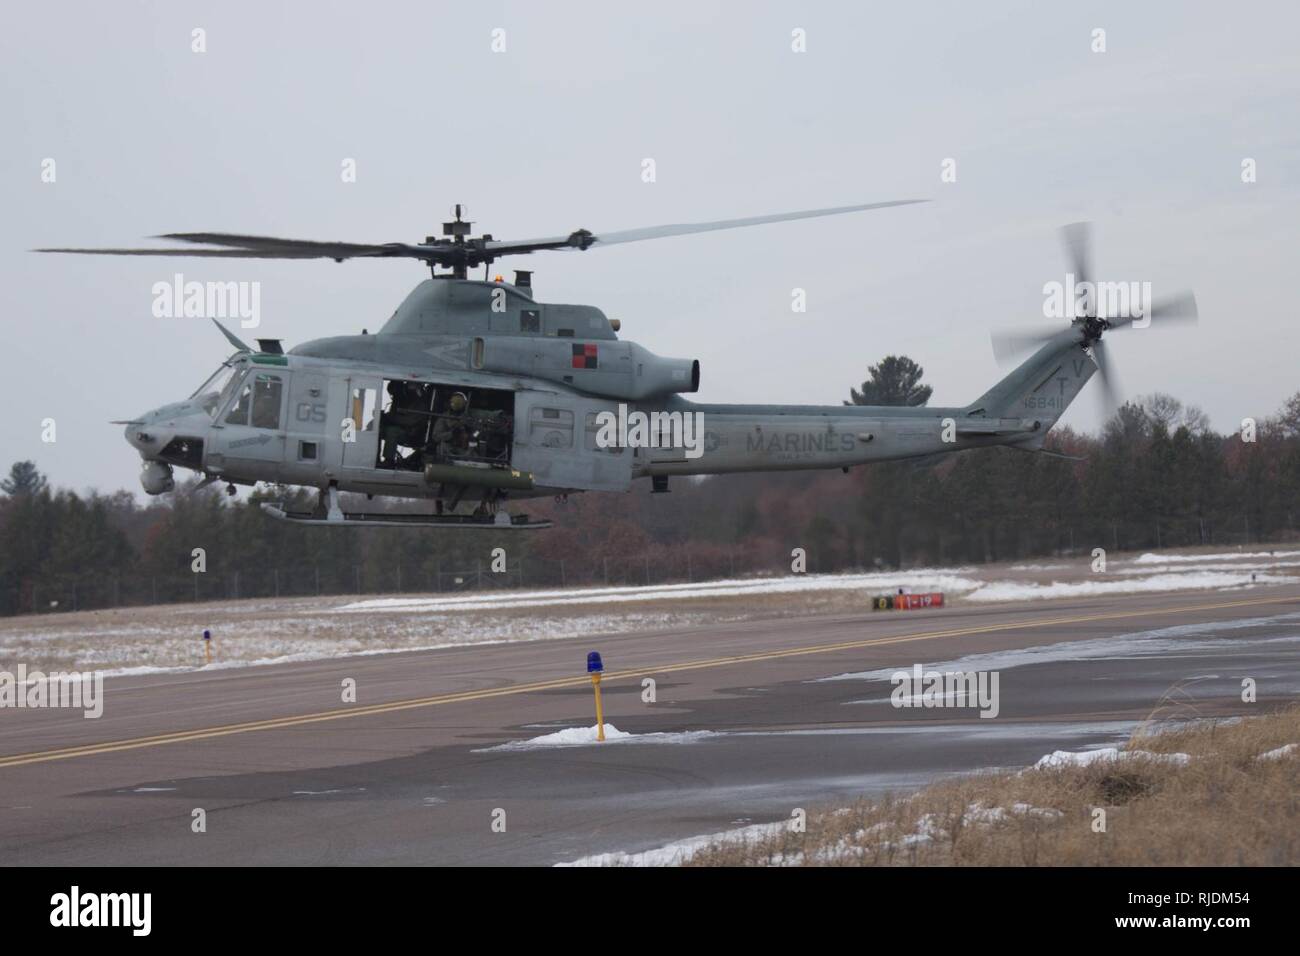 Corps des Marines américains UH-1Y Venom affectés à l'Escadron d'hélicoptères d'attaque légère Marine 167 décolle de l'Aérodrome de Fort McCoy, au Wisconsin, le 20 janvier 2018. Ullr Shield est un exercice visant à améliorer 2'aile de sa capacité dans des environnements grand froid. Banque D'Images